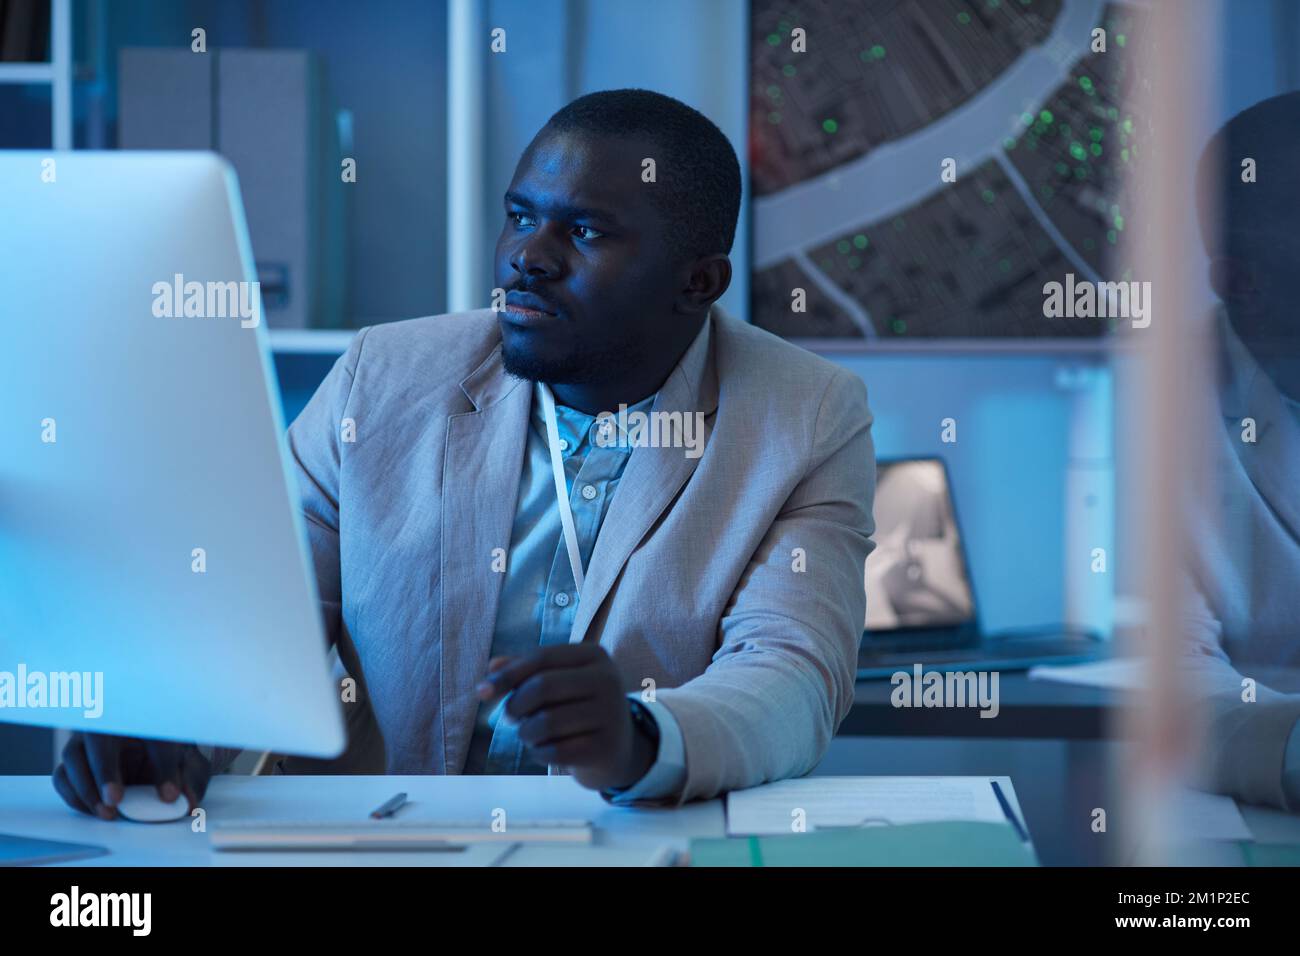 Portrait d'homme noir travaillant dans un centre de sécurité et utilisant un ordinateur, scène de ton bleu Banque D'Images